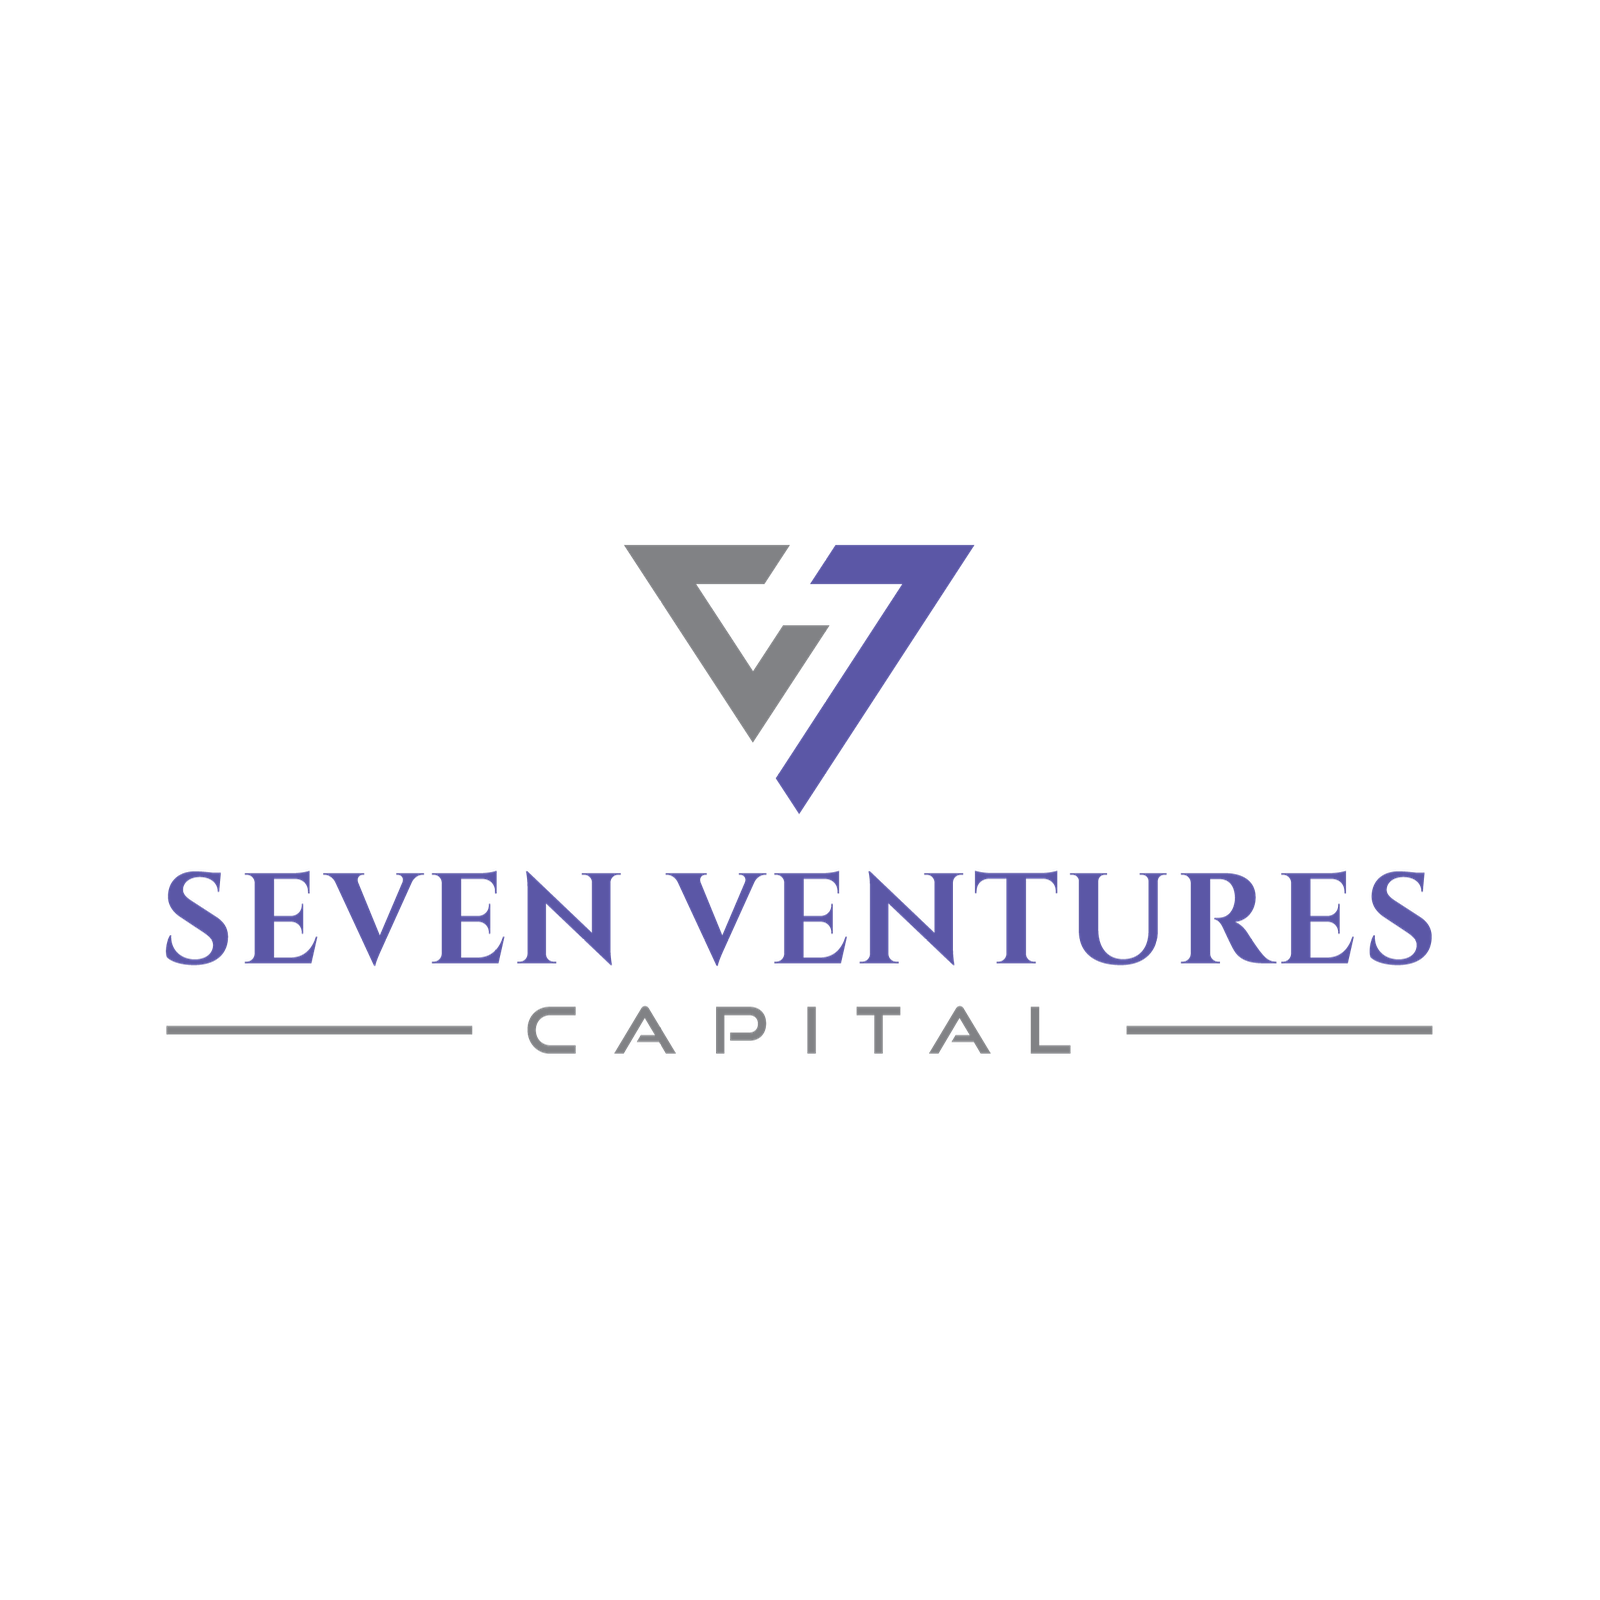 7 ventures capital